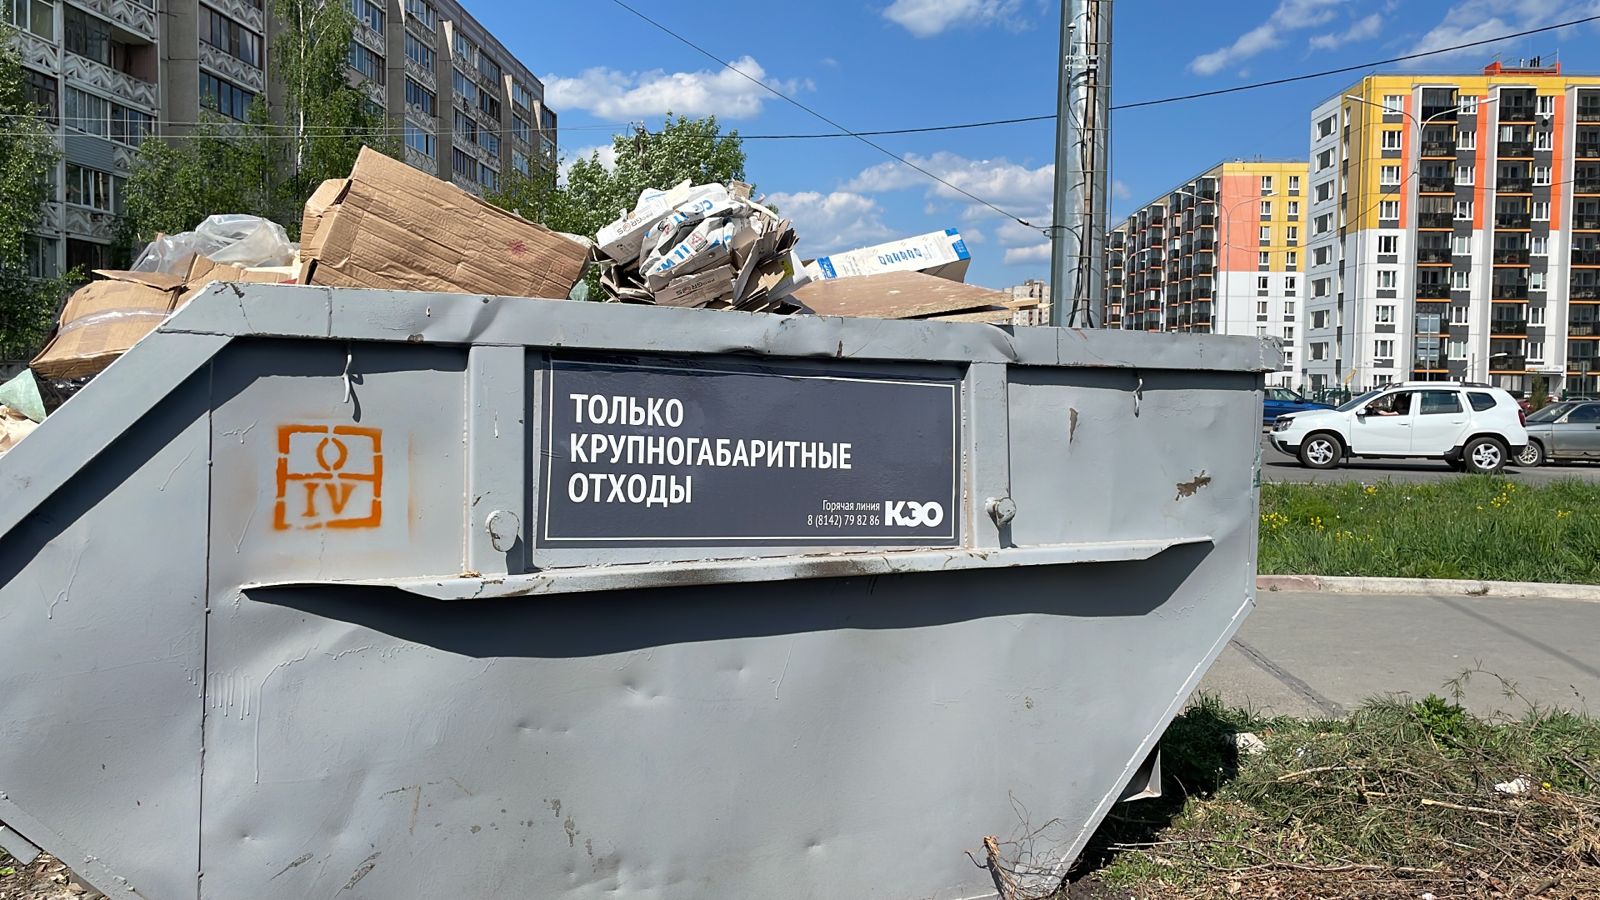 «Карельский экологический оператор» установит 70 бункеров под крупногабаритные отходы